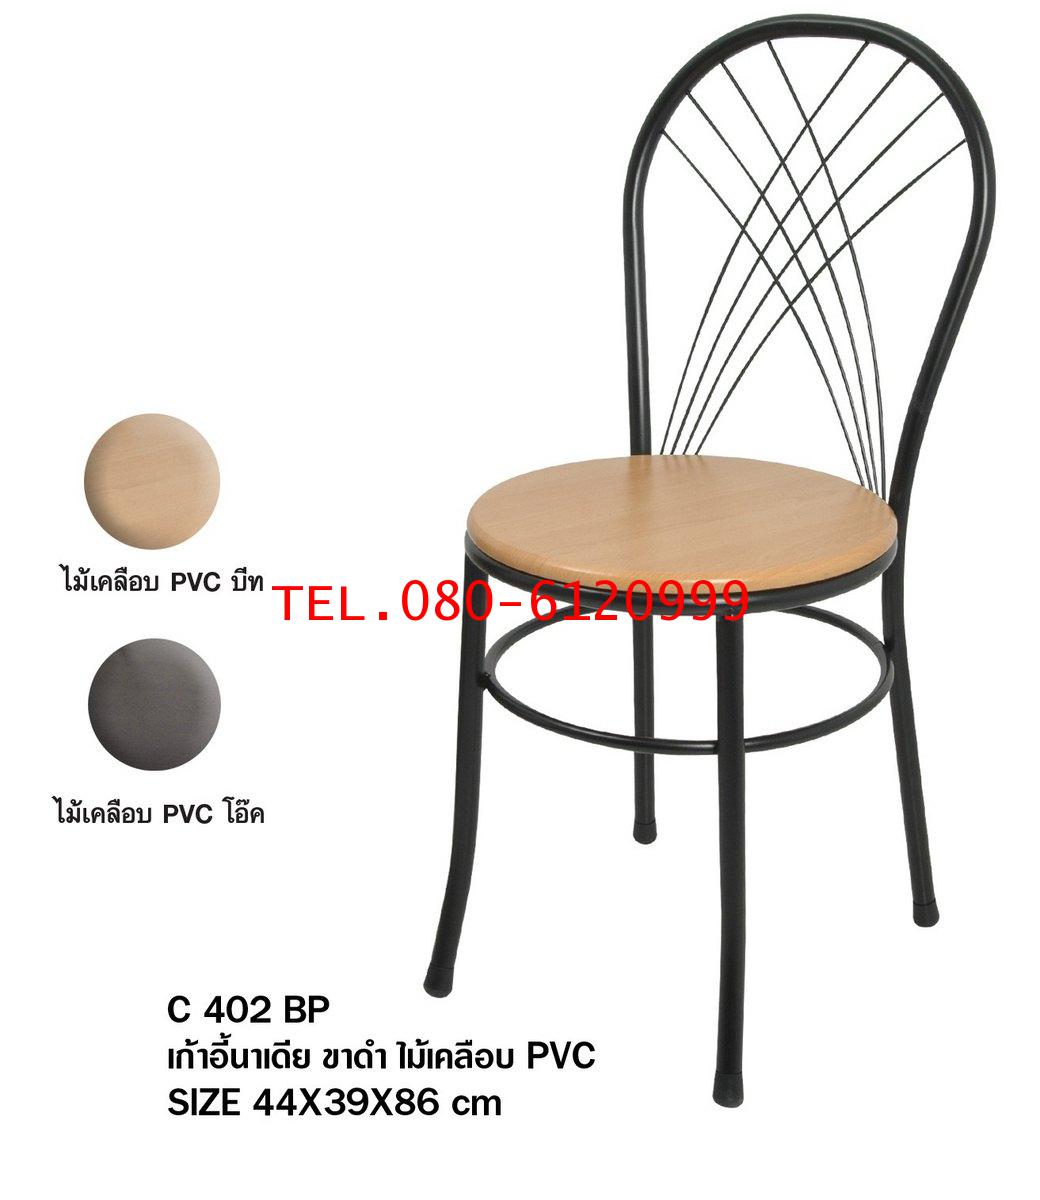 pmy29-11 เก้าอี้นาเดีย ขาดำ ไม้เคลือบ PVC